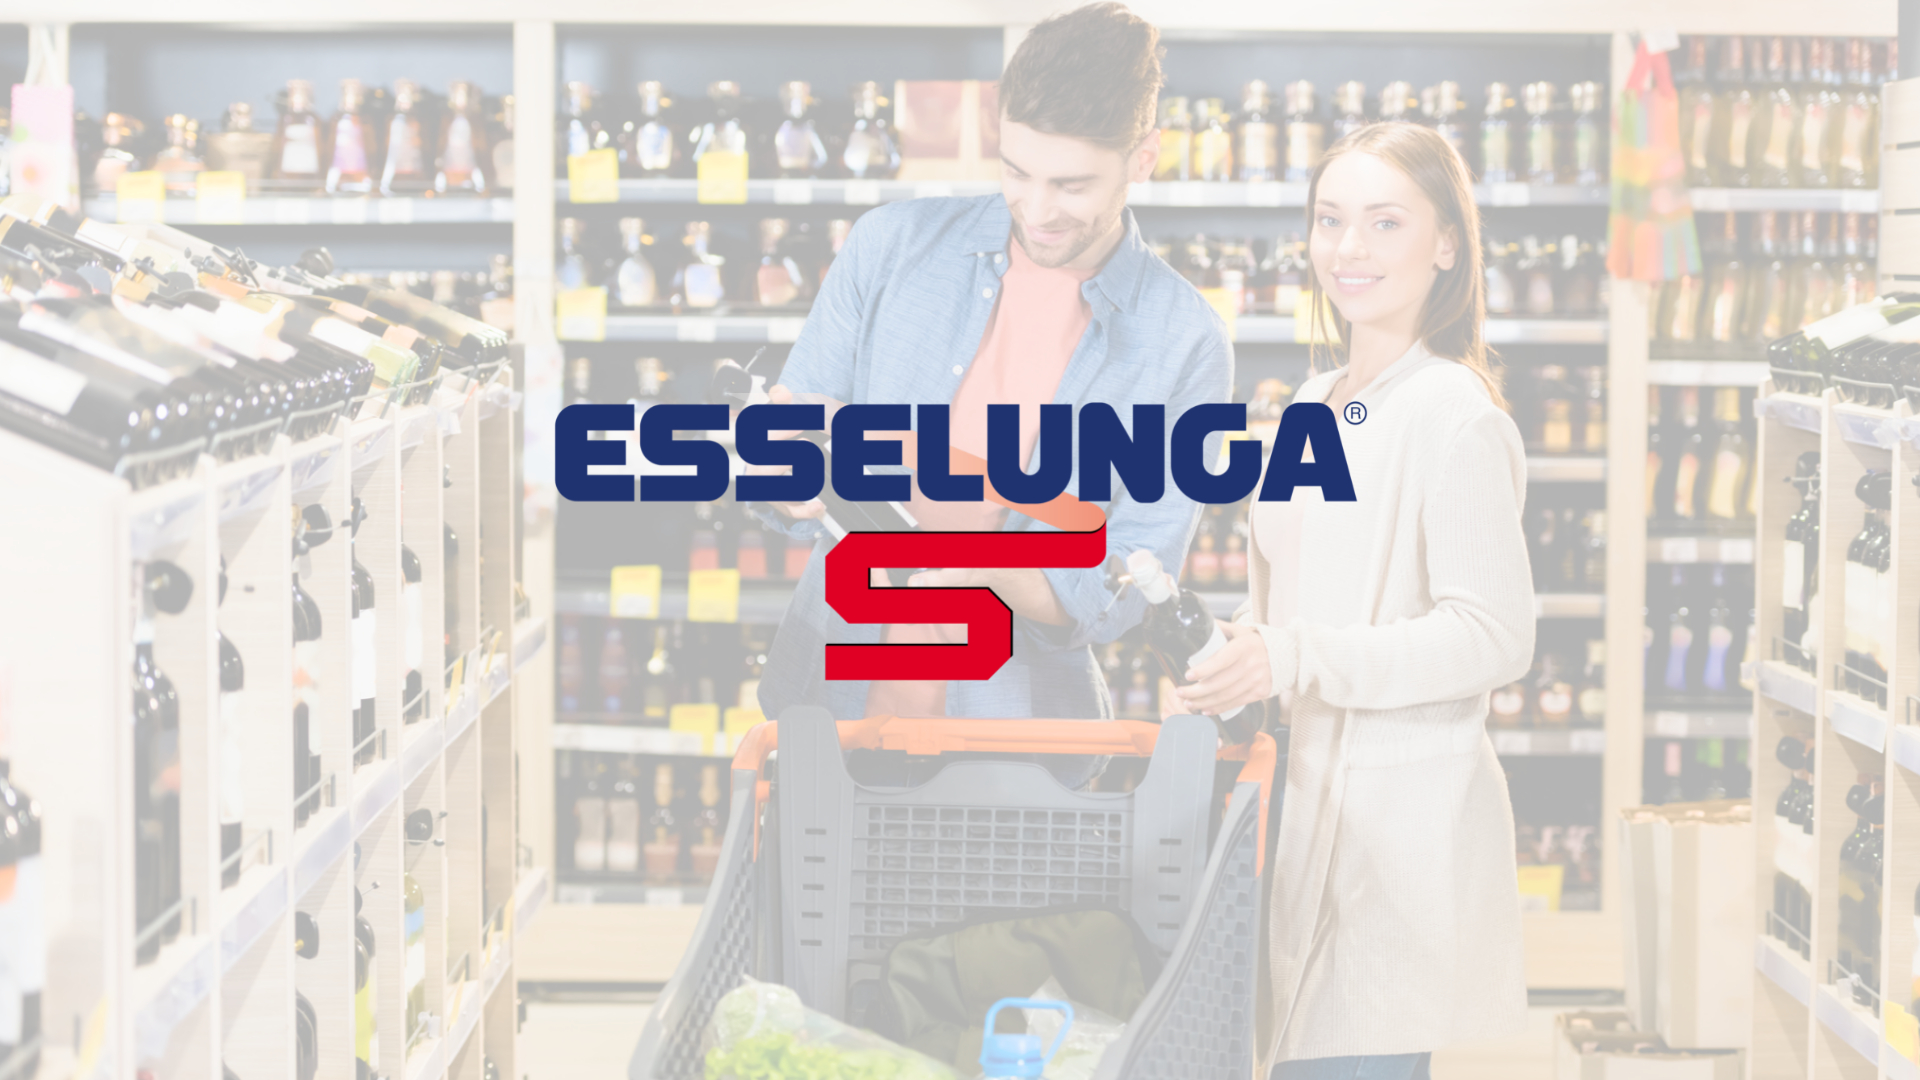 Oltre 1.000 etichette con l’enoteca online lanciata da Esselunga